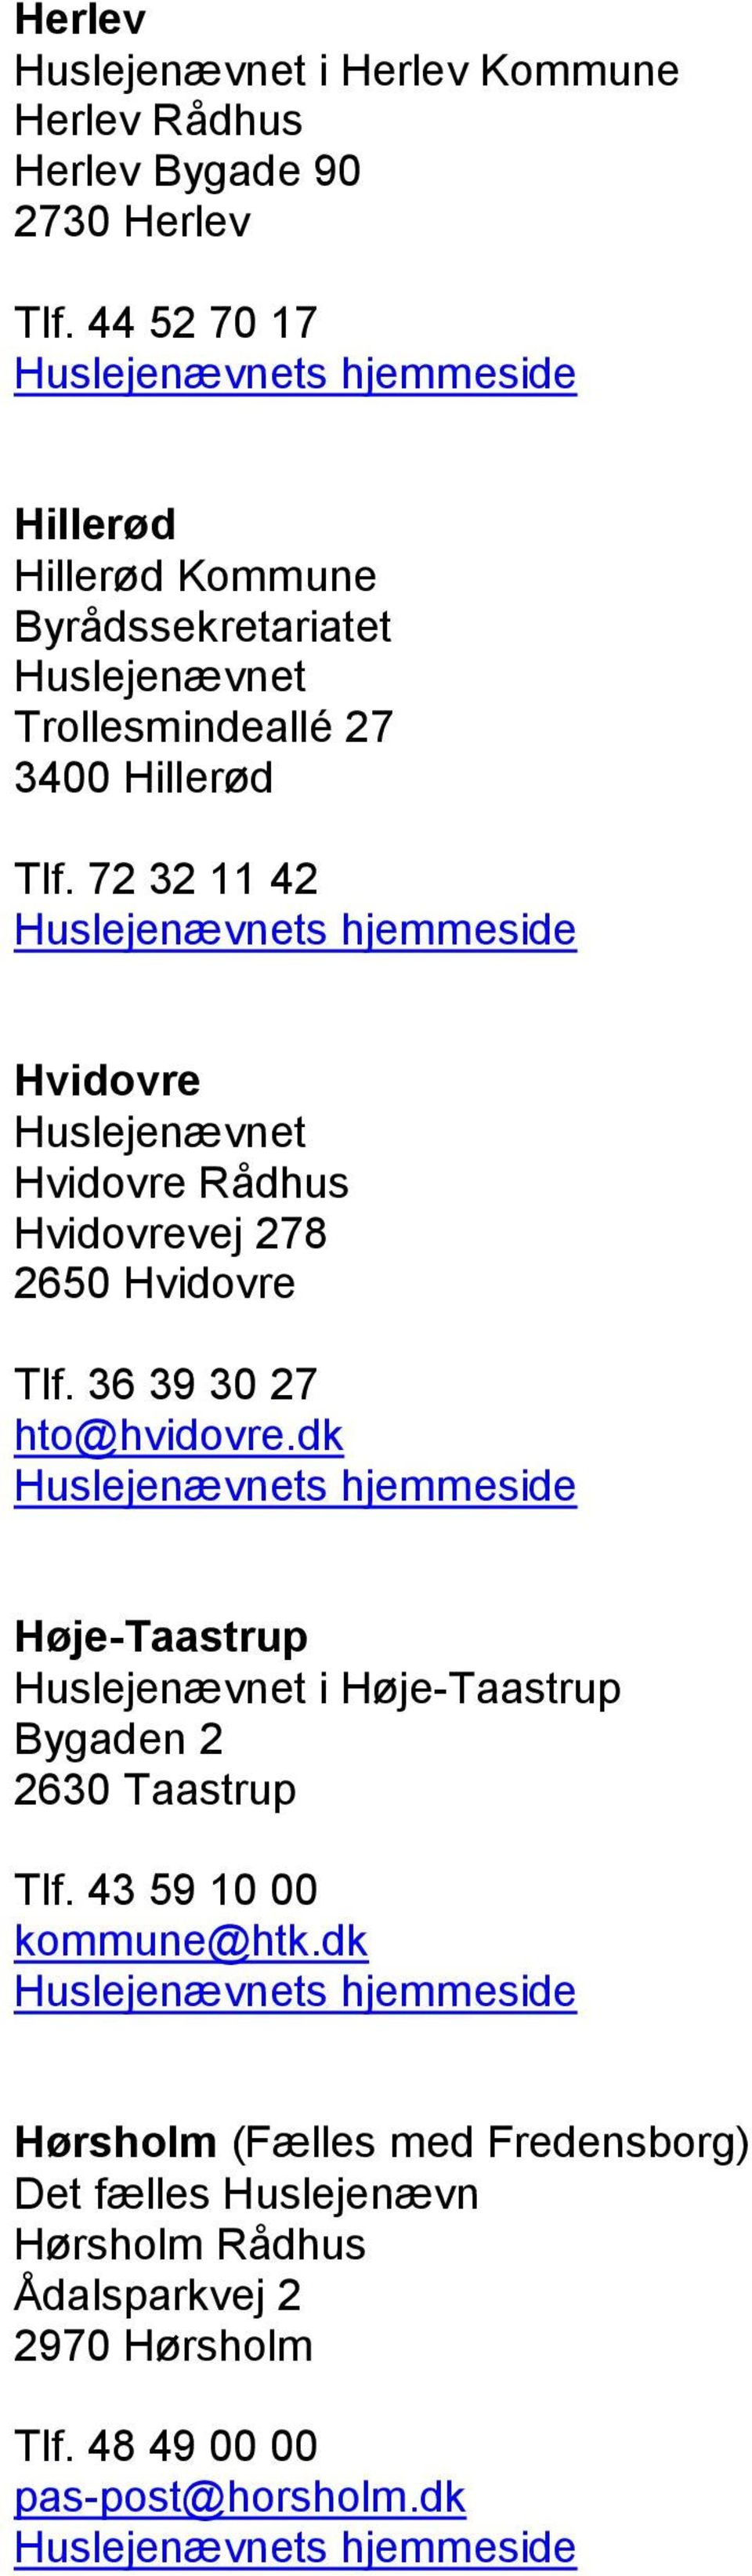 72 32 11 42 Hvidovre Hvidovre Rådhus Hvidovrevej 278 2650 Hvidovre Tlf. 36 39 30 27 hto@hvidovre.